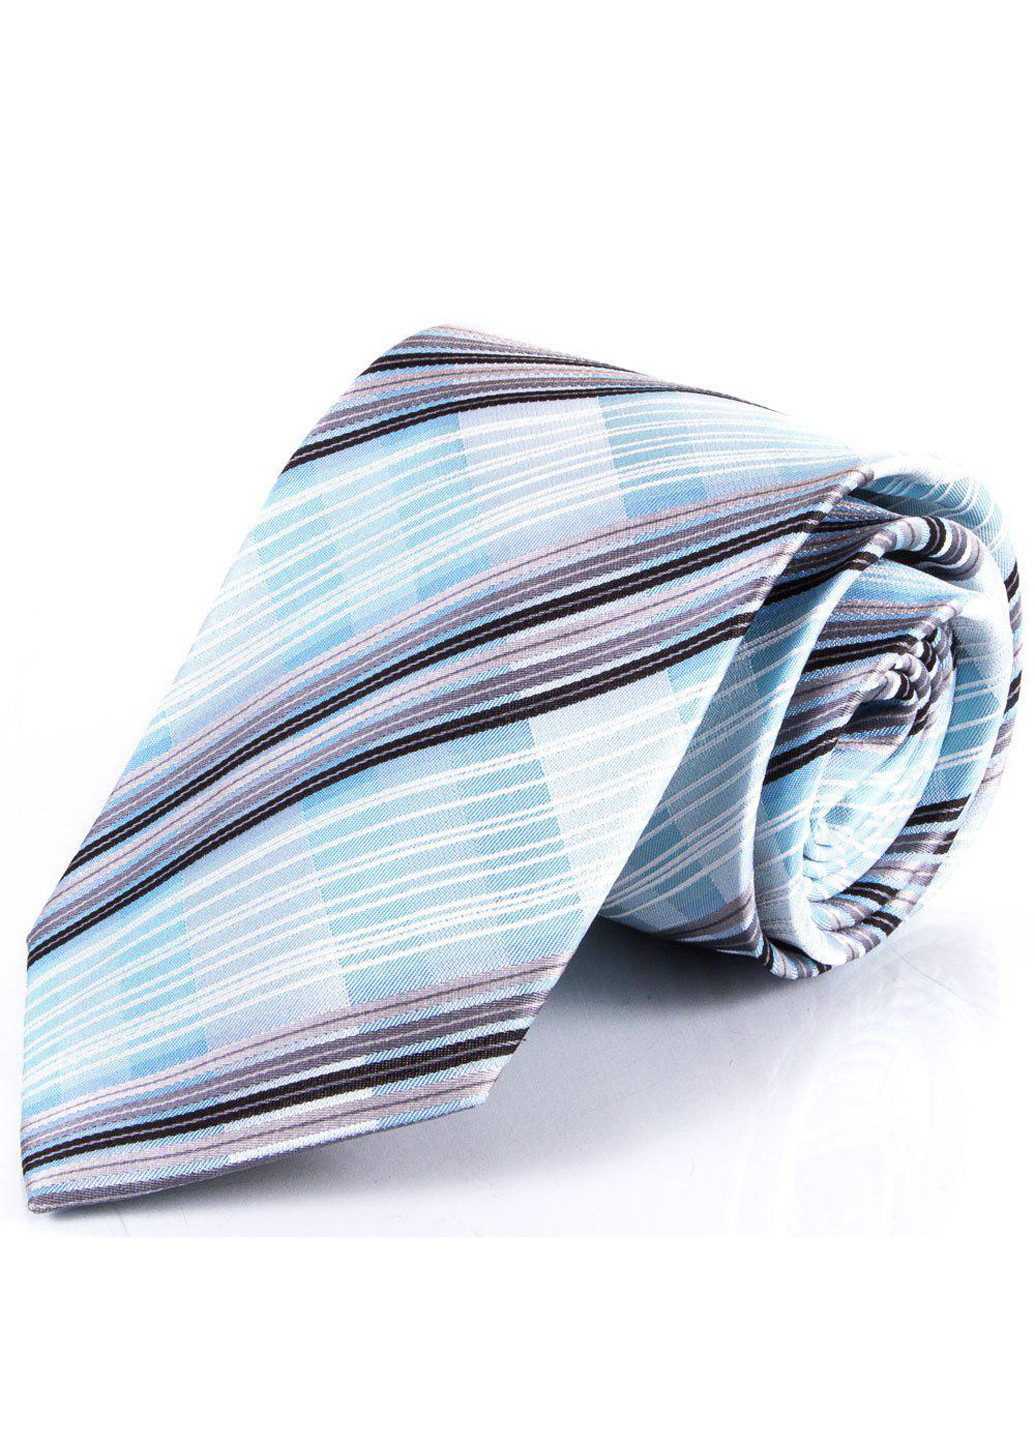 Мужской шелковый галстук 150 см Schonau & Houcken (195538510)